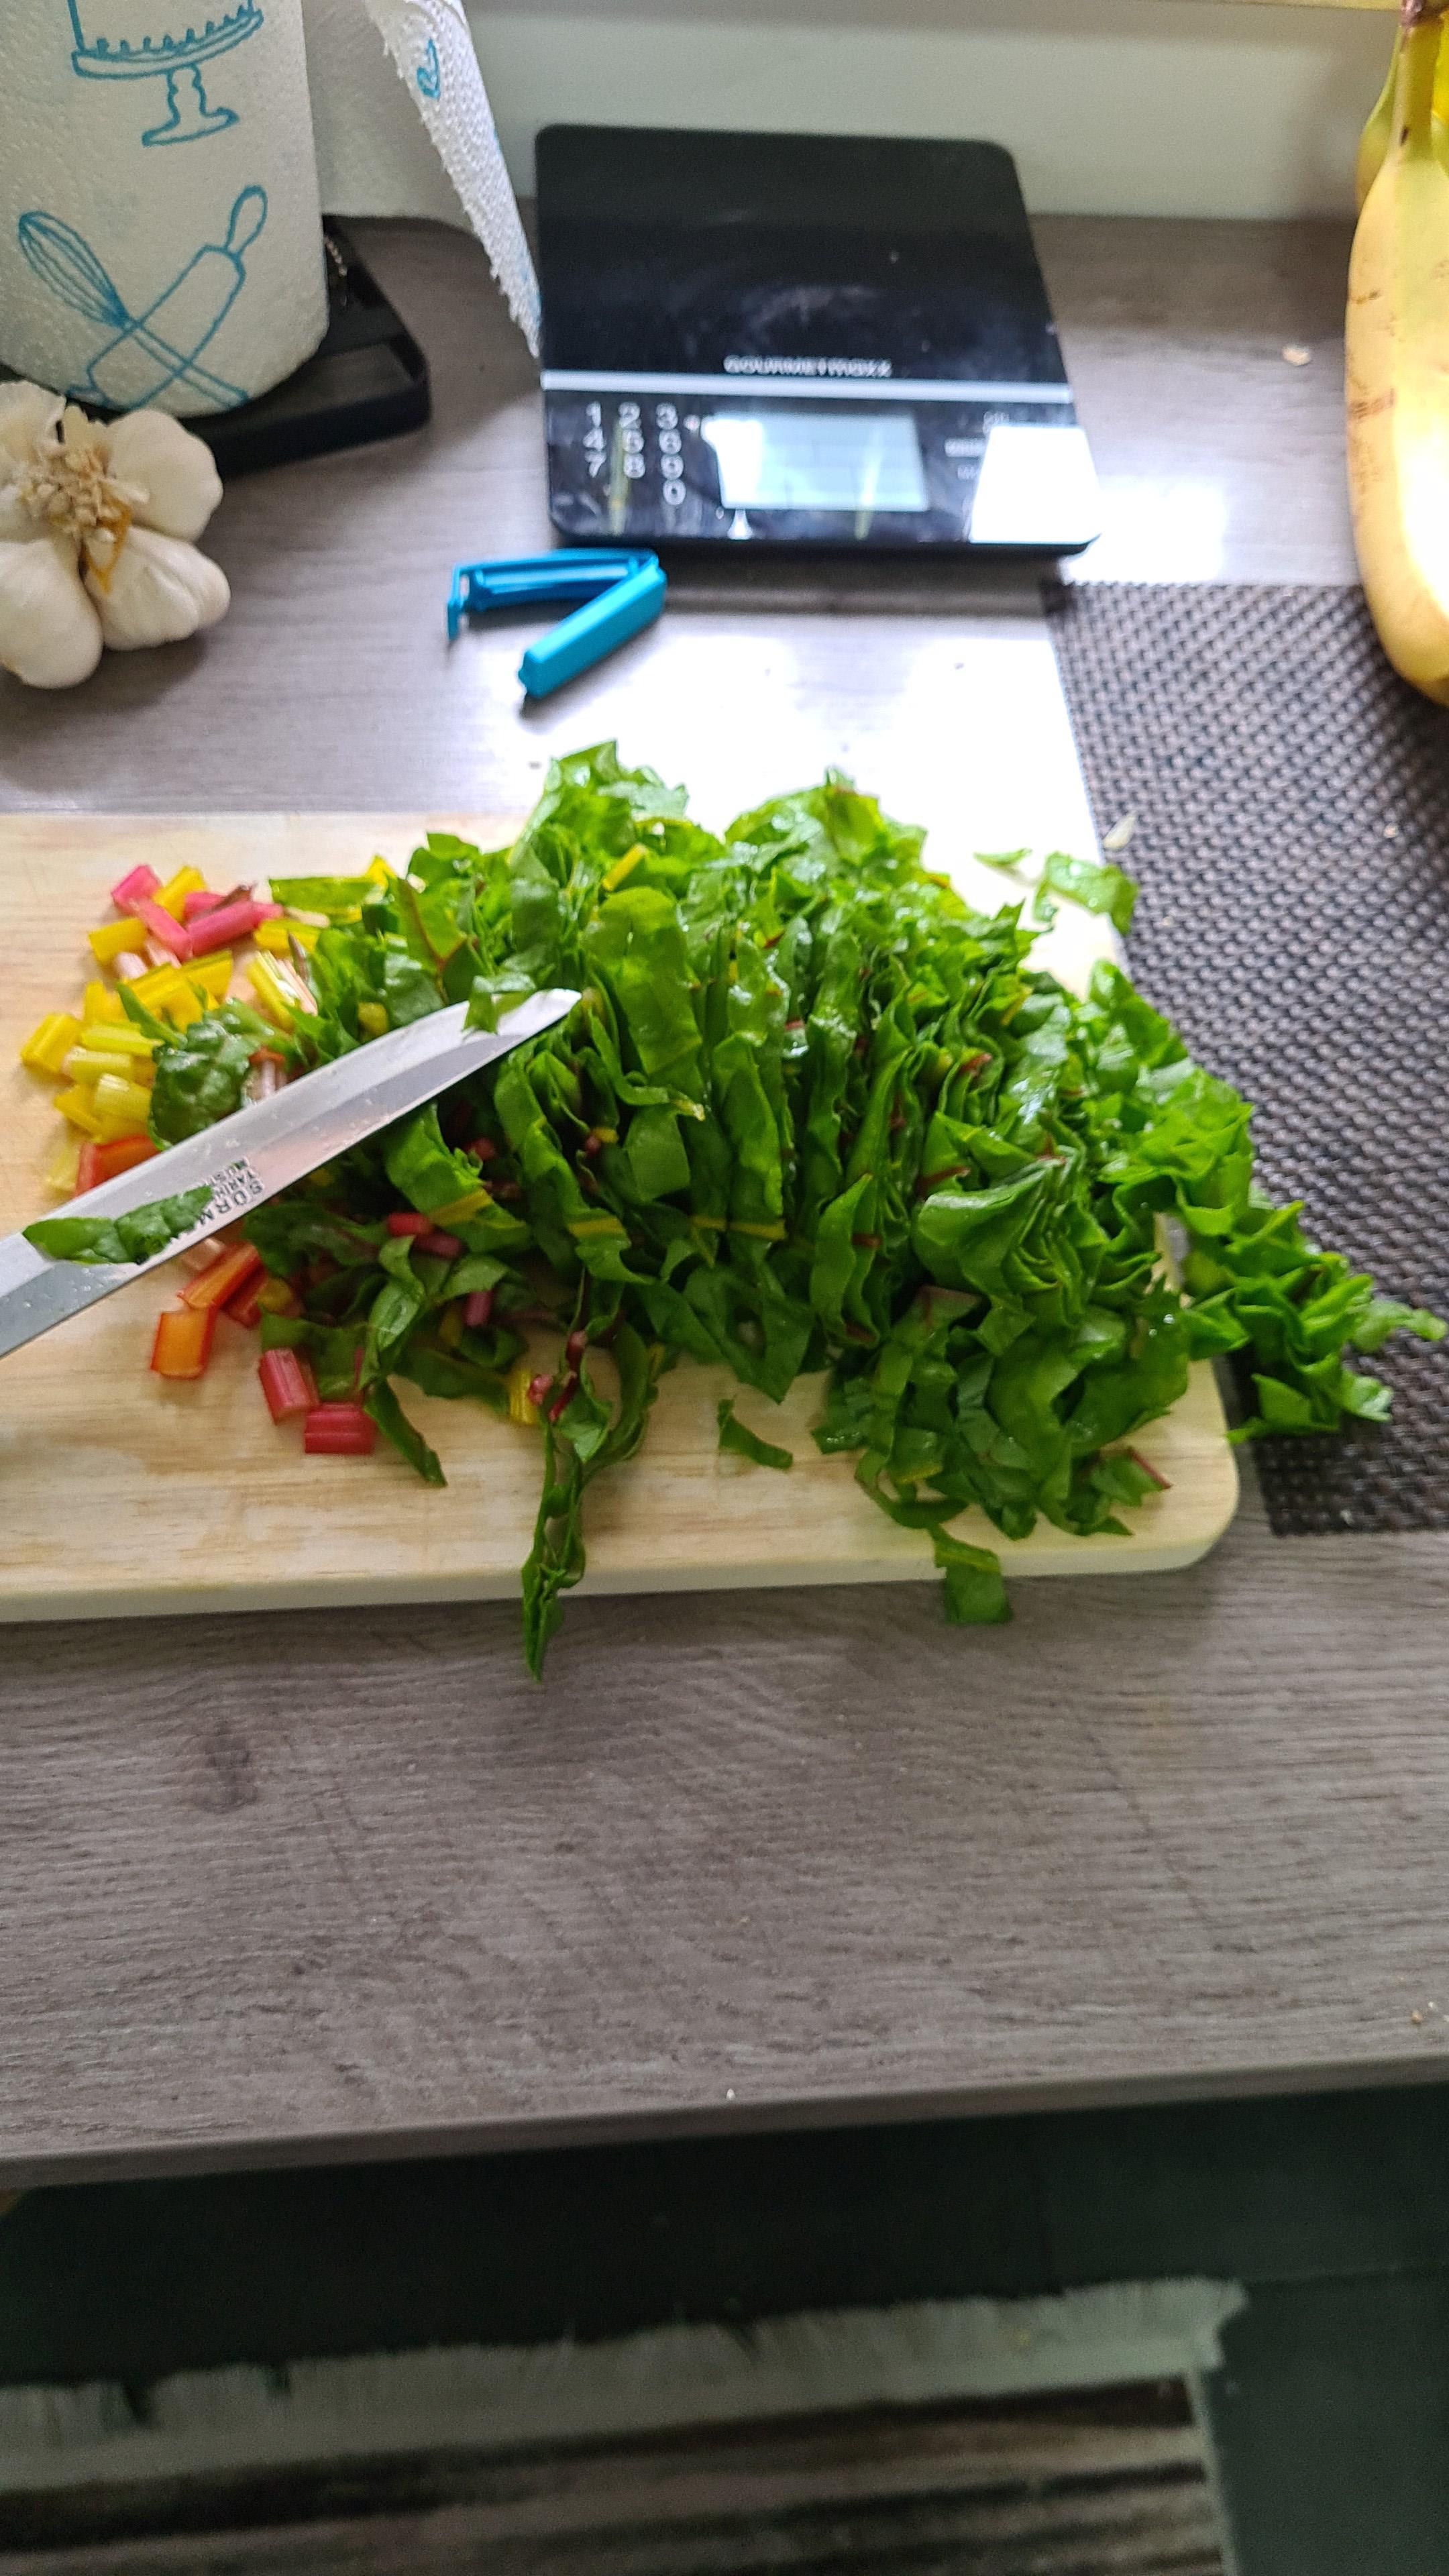 Aus meinem Garten:)
#lecker #Salat 